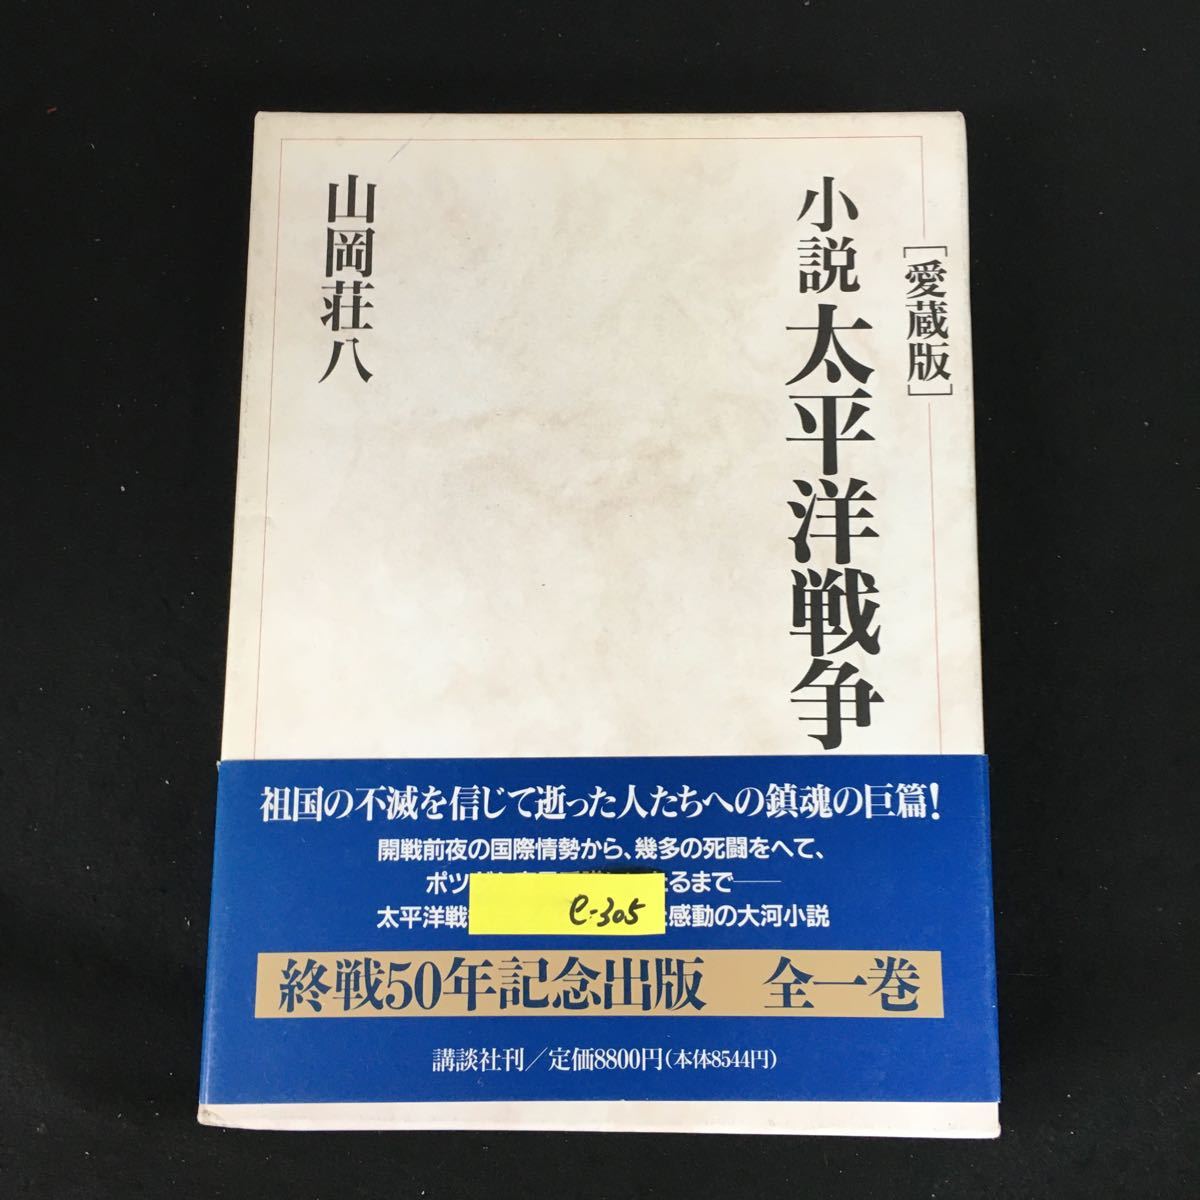 e-305 коллекционное издание повесть futoshi flat . война автор / Yamaoka Sohachi акционерное общество .. фирма 1994 год no. 1. выпуск *12